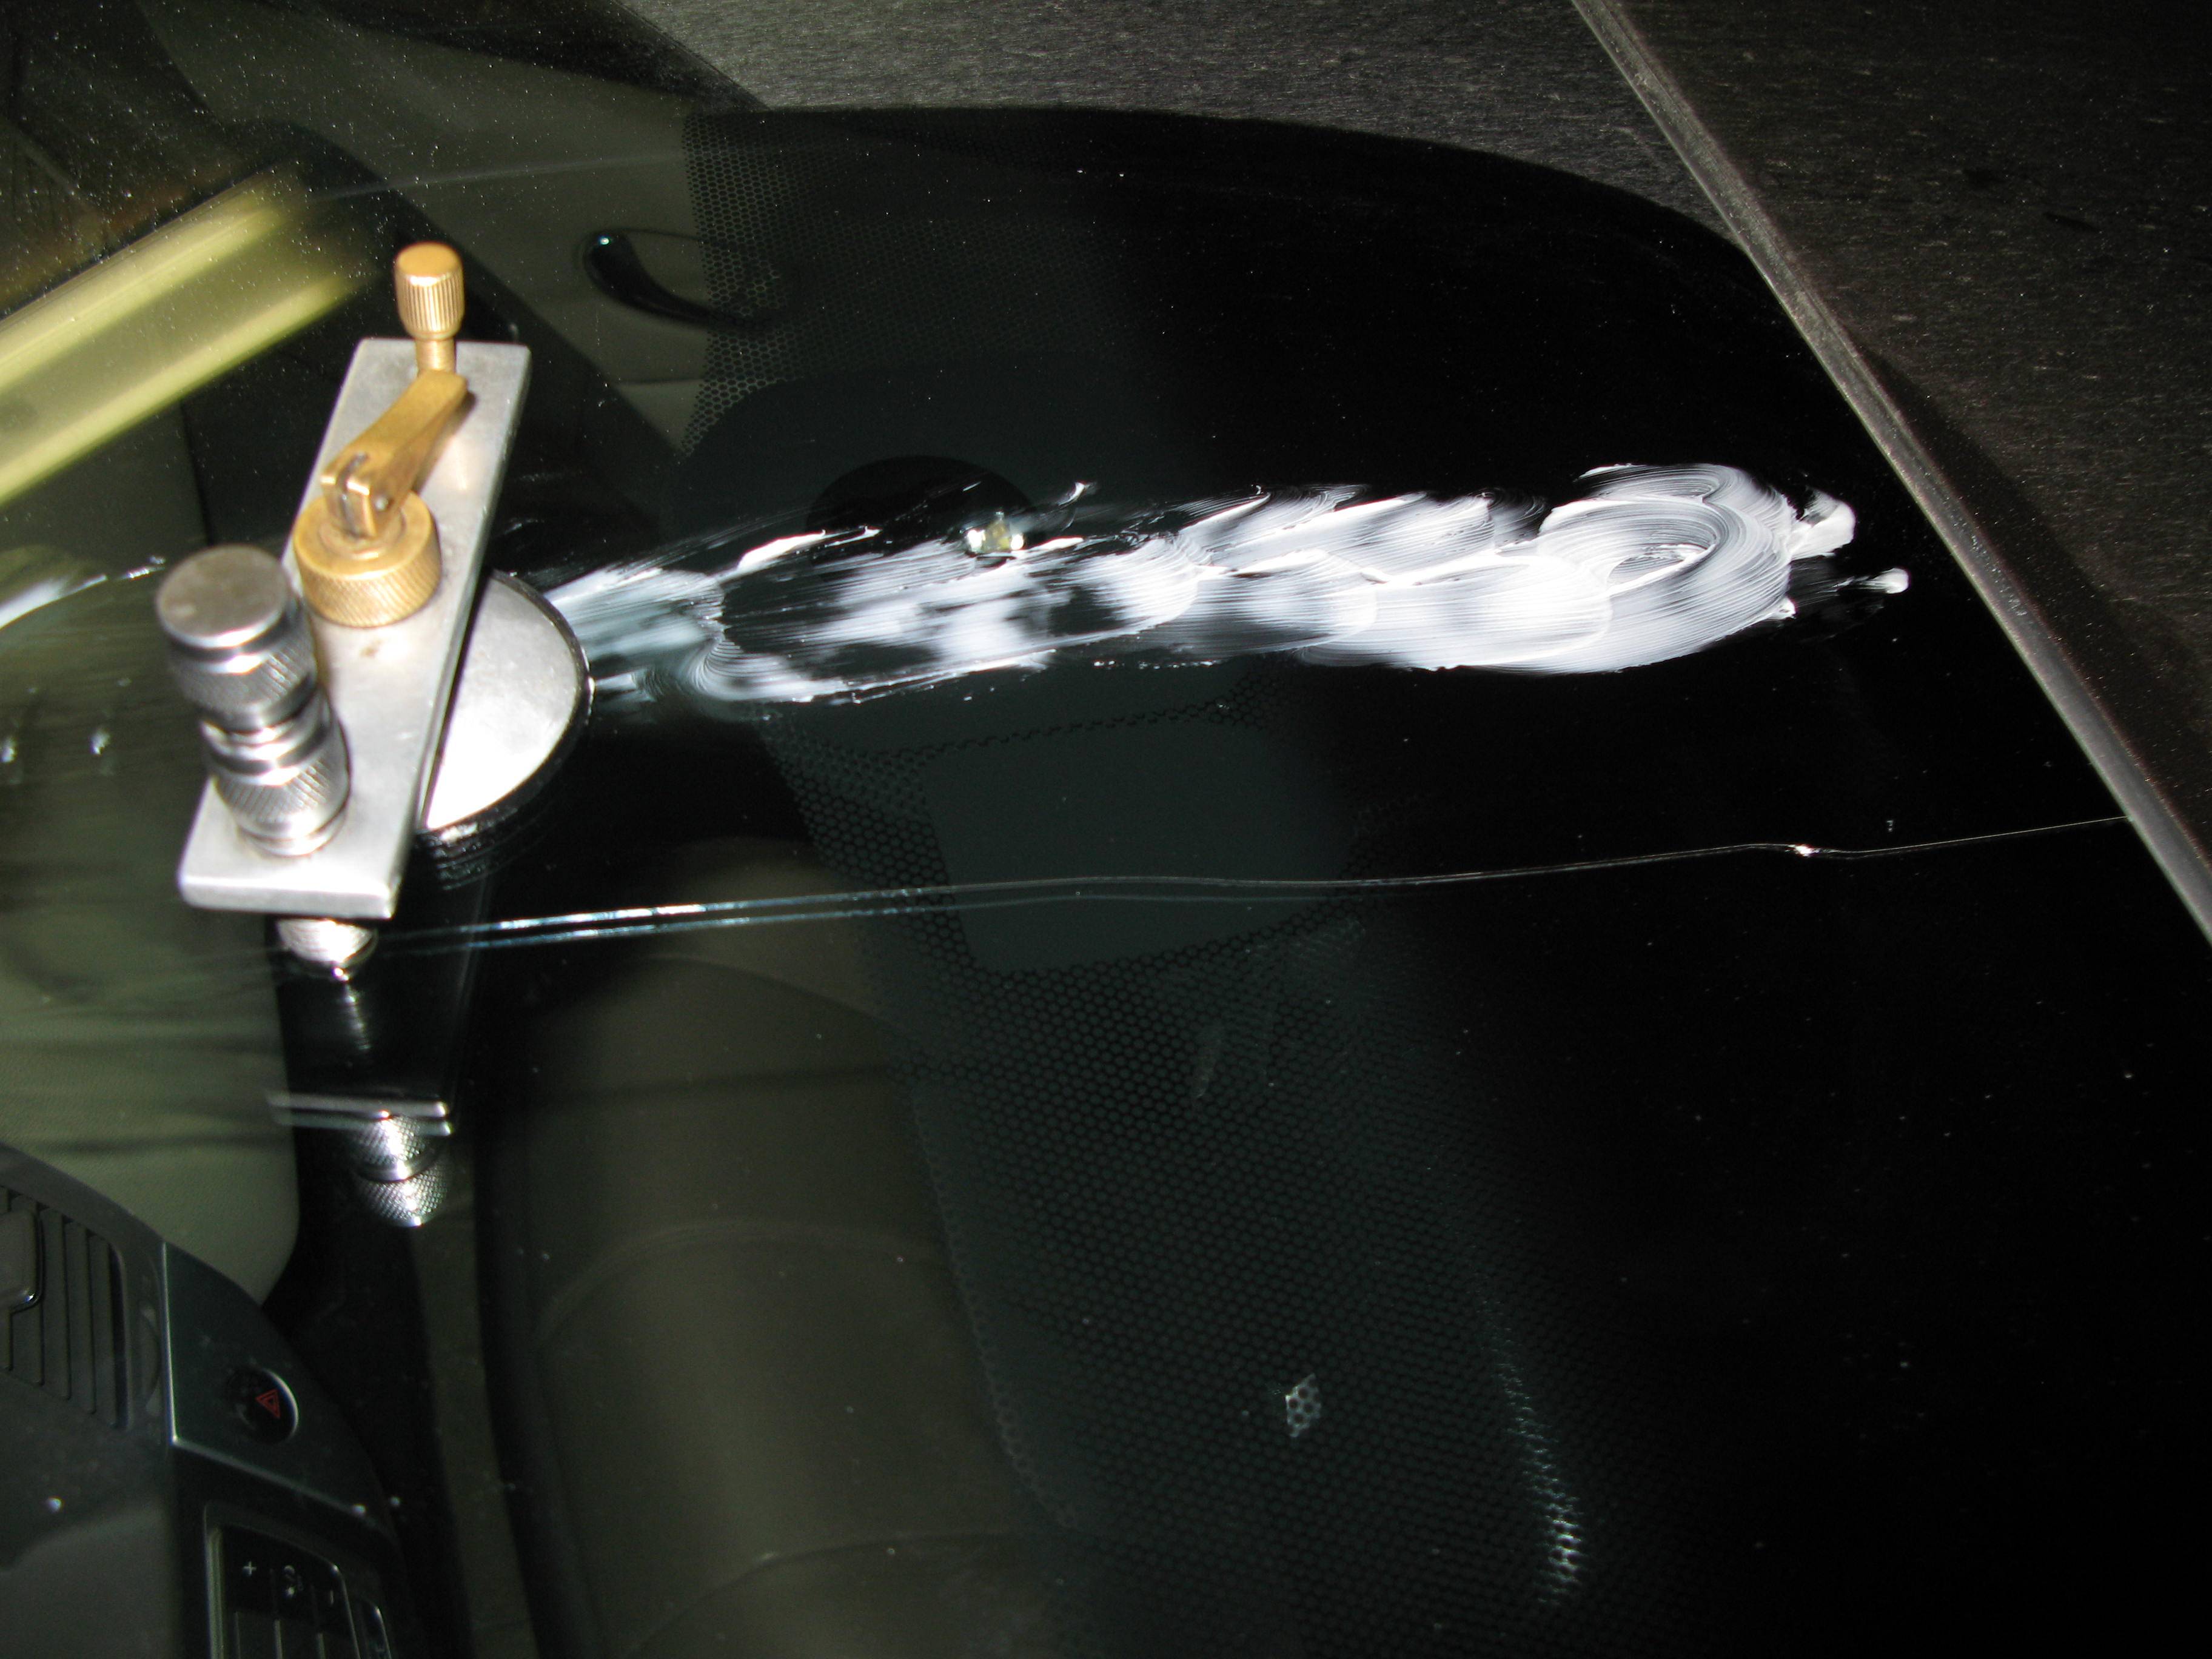 Как я решил вопрос заклеивания трещины на лобовом стекле своего авто григорий михеев, блог малоэтажная страна